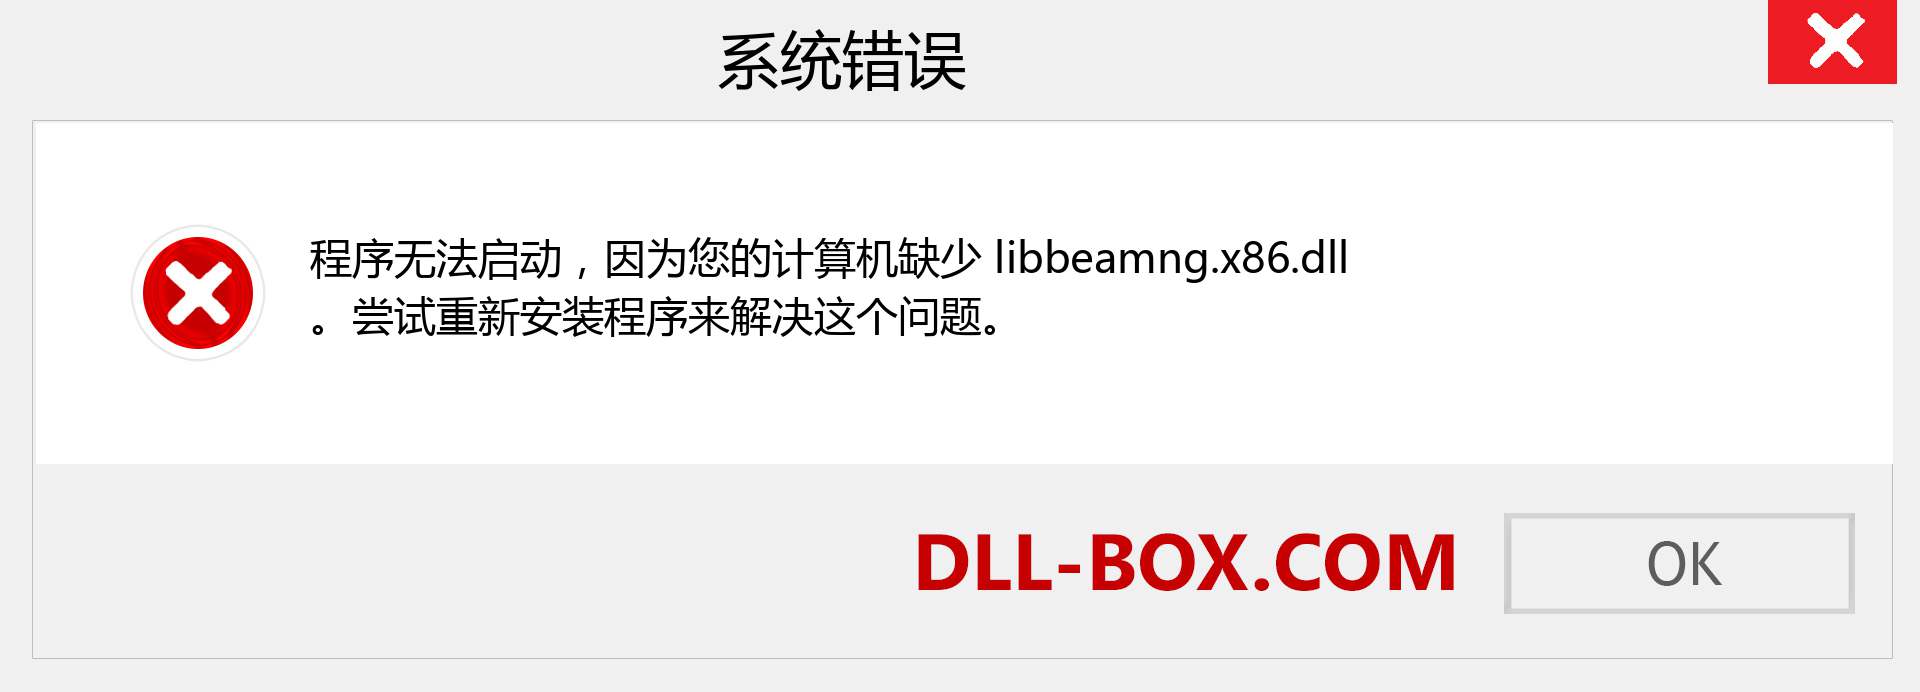 libbeamng.x86.dll 文件丢失？。 适用于 Windows 7、8、10 的下载 - 修复 Windows、照片、图像上的 libbeamng.x86 dll 丢失错误